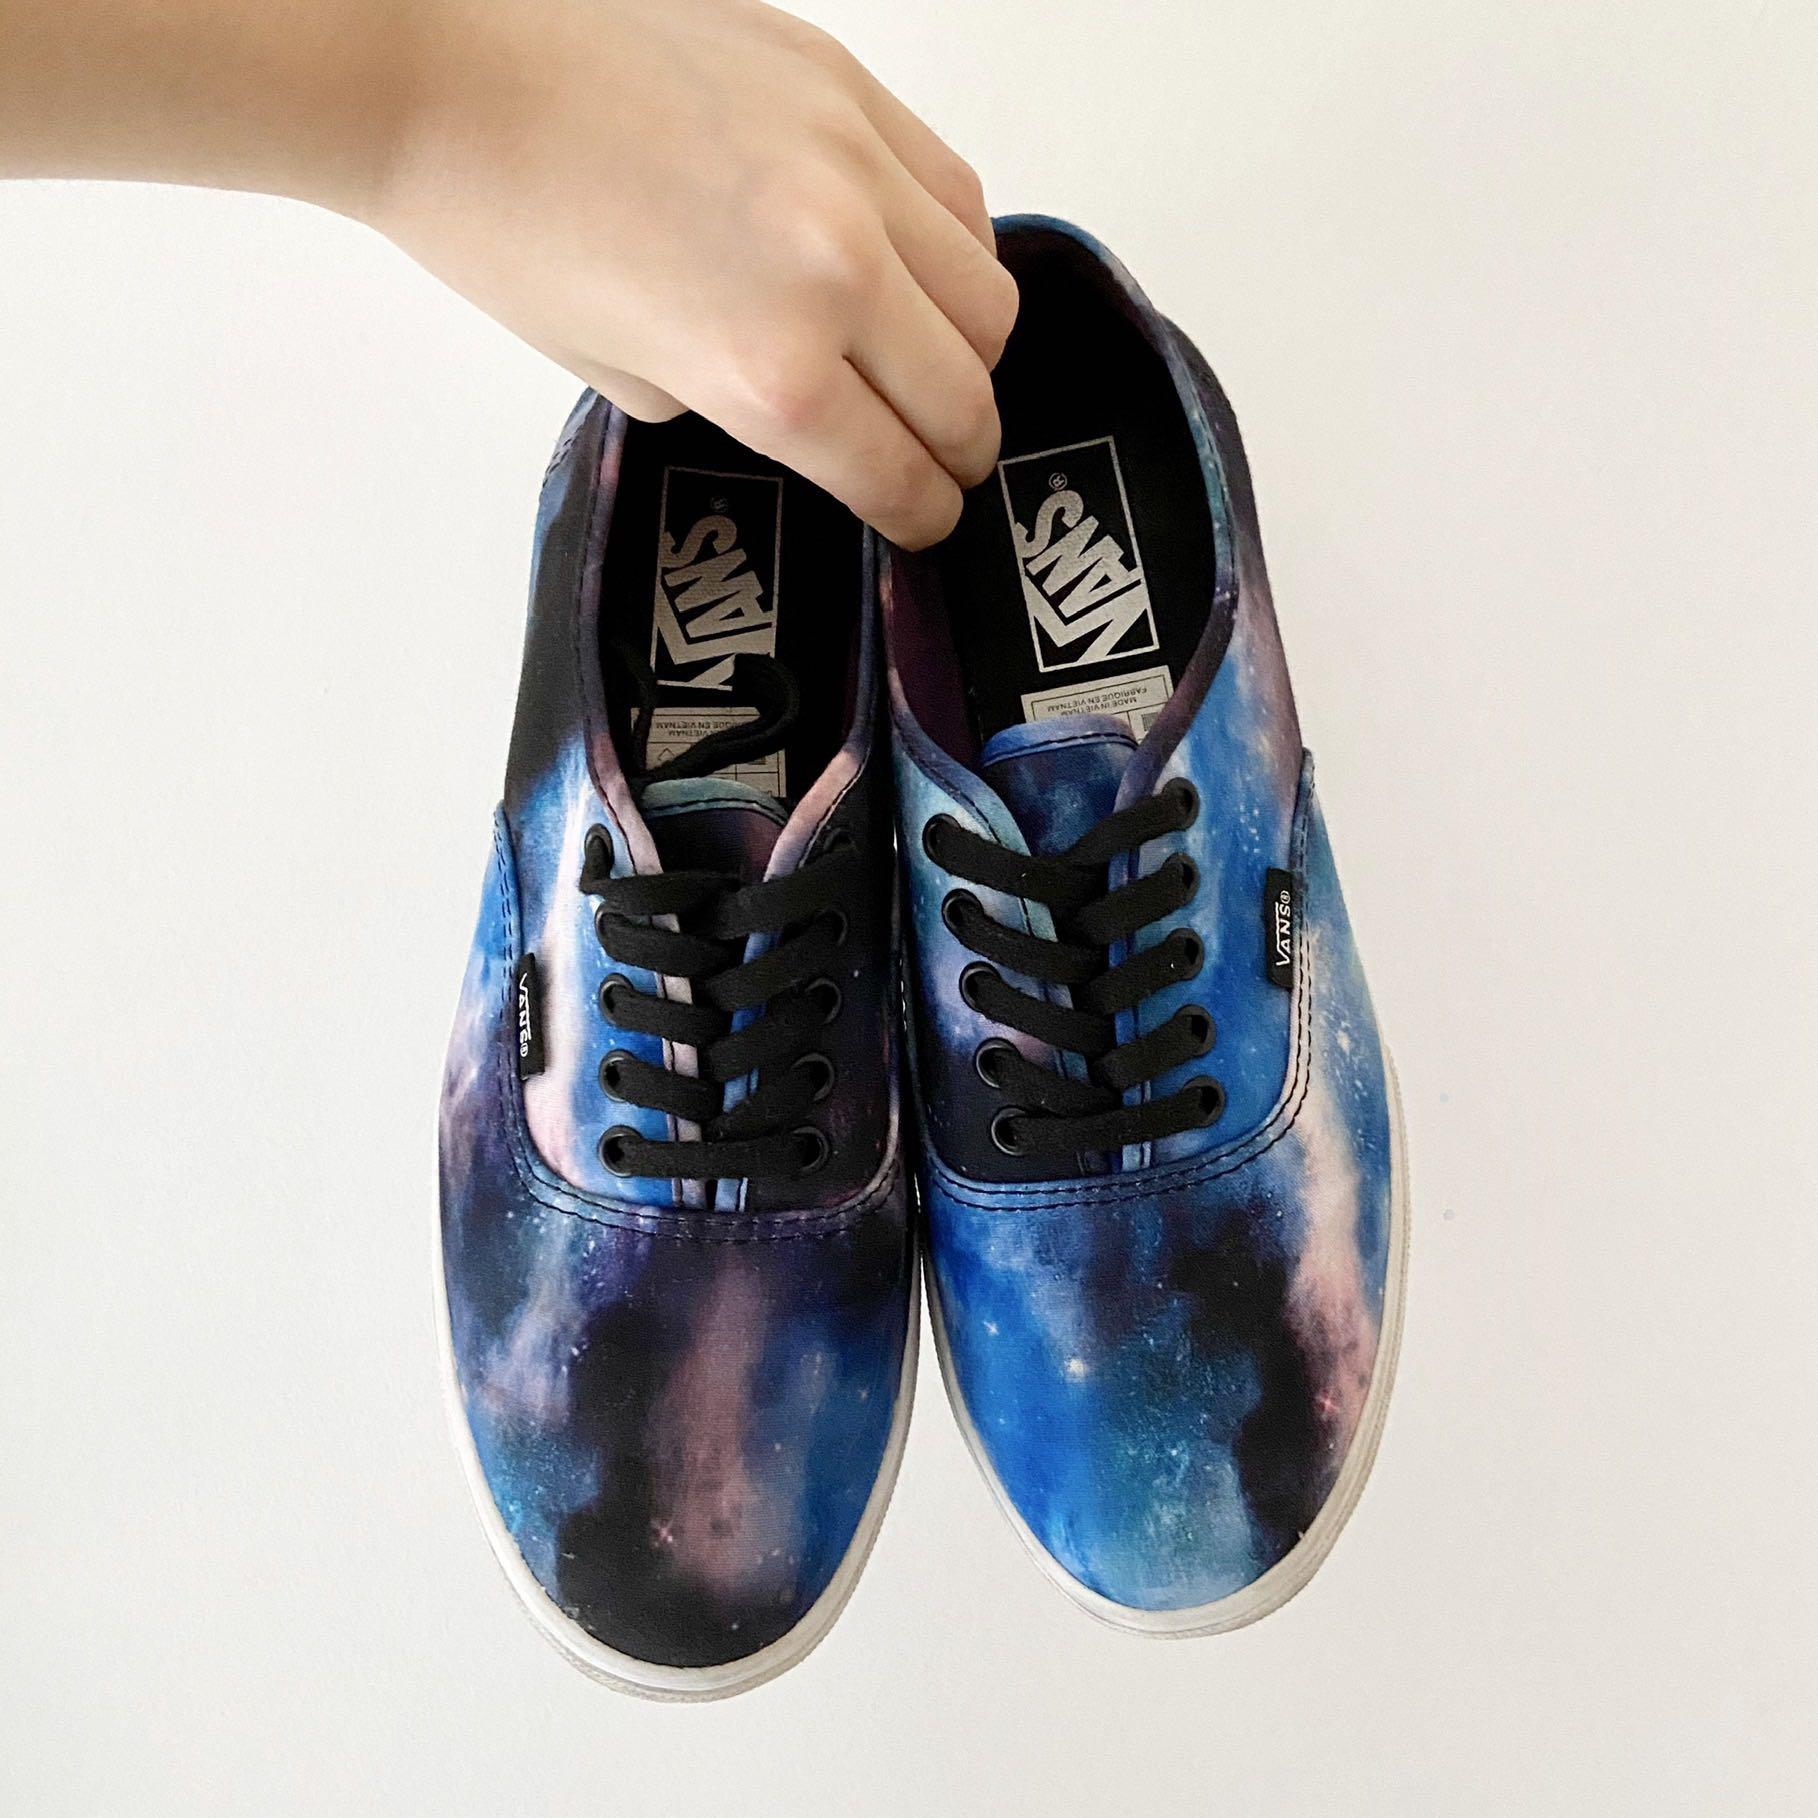 vans cosmic shoes